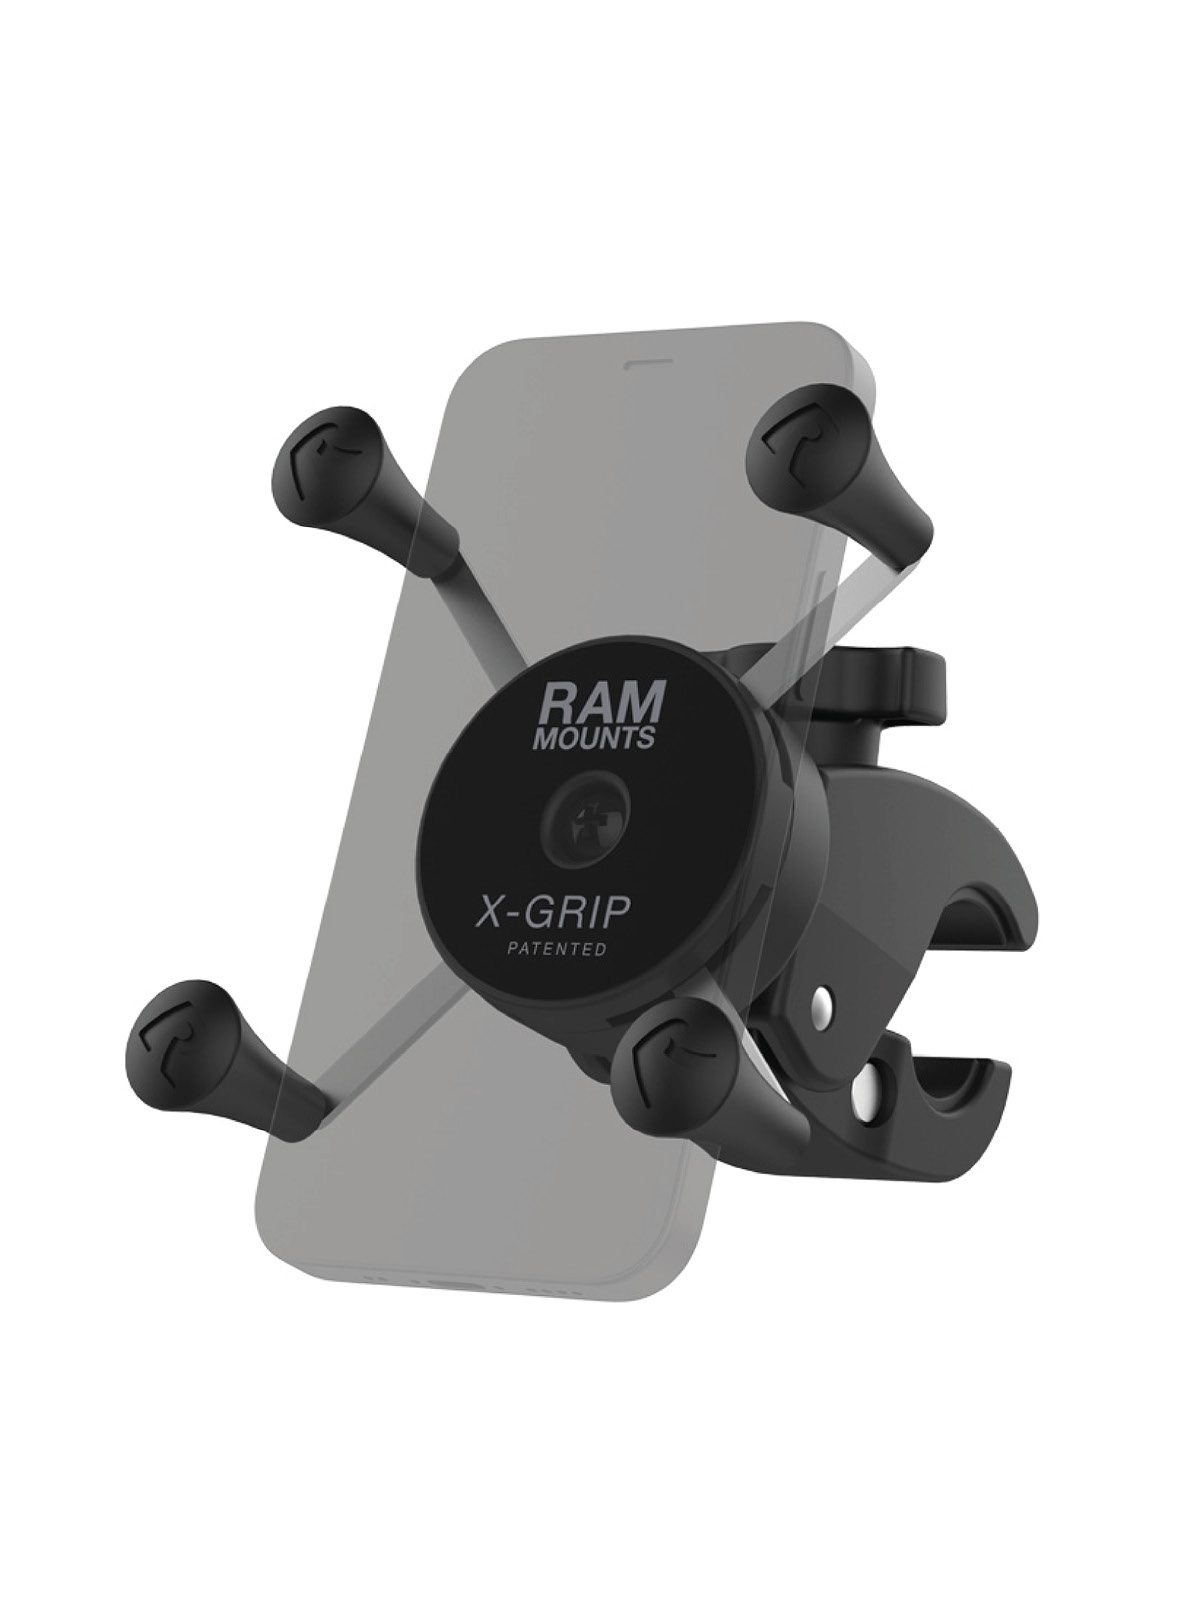 RAM Mounts X-Grip Halterung für Smartphones - kleine Tough-Claw (Durchmesser 15,9-29,0 mm), direkte X-Grip-Anbindung